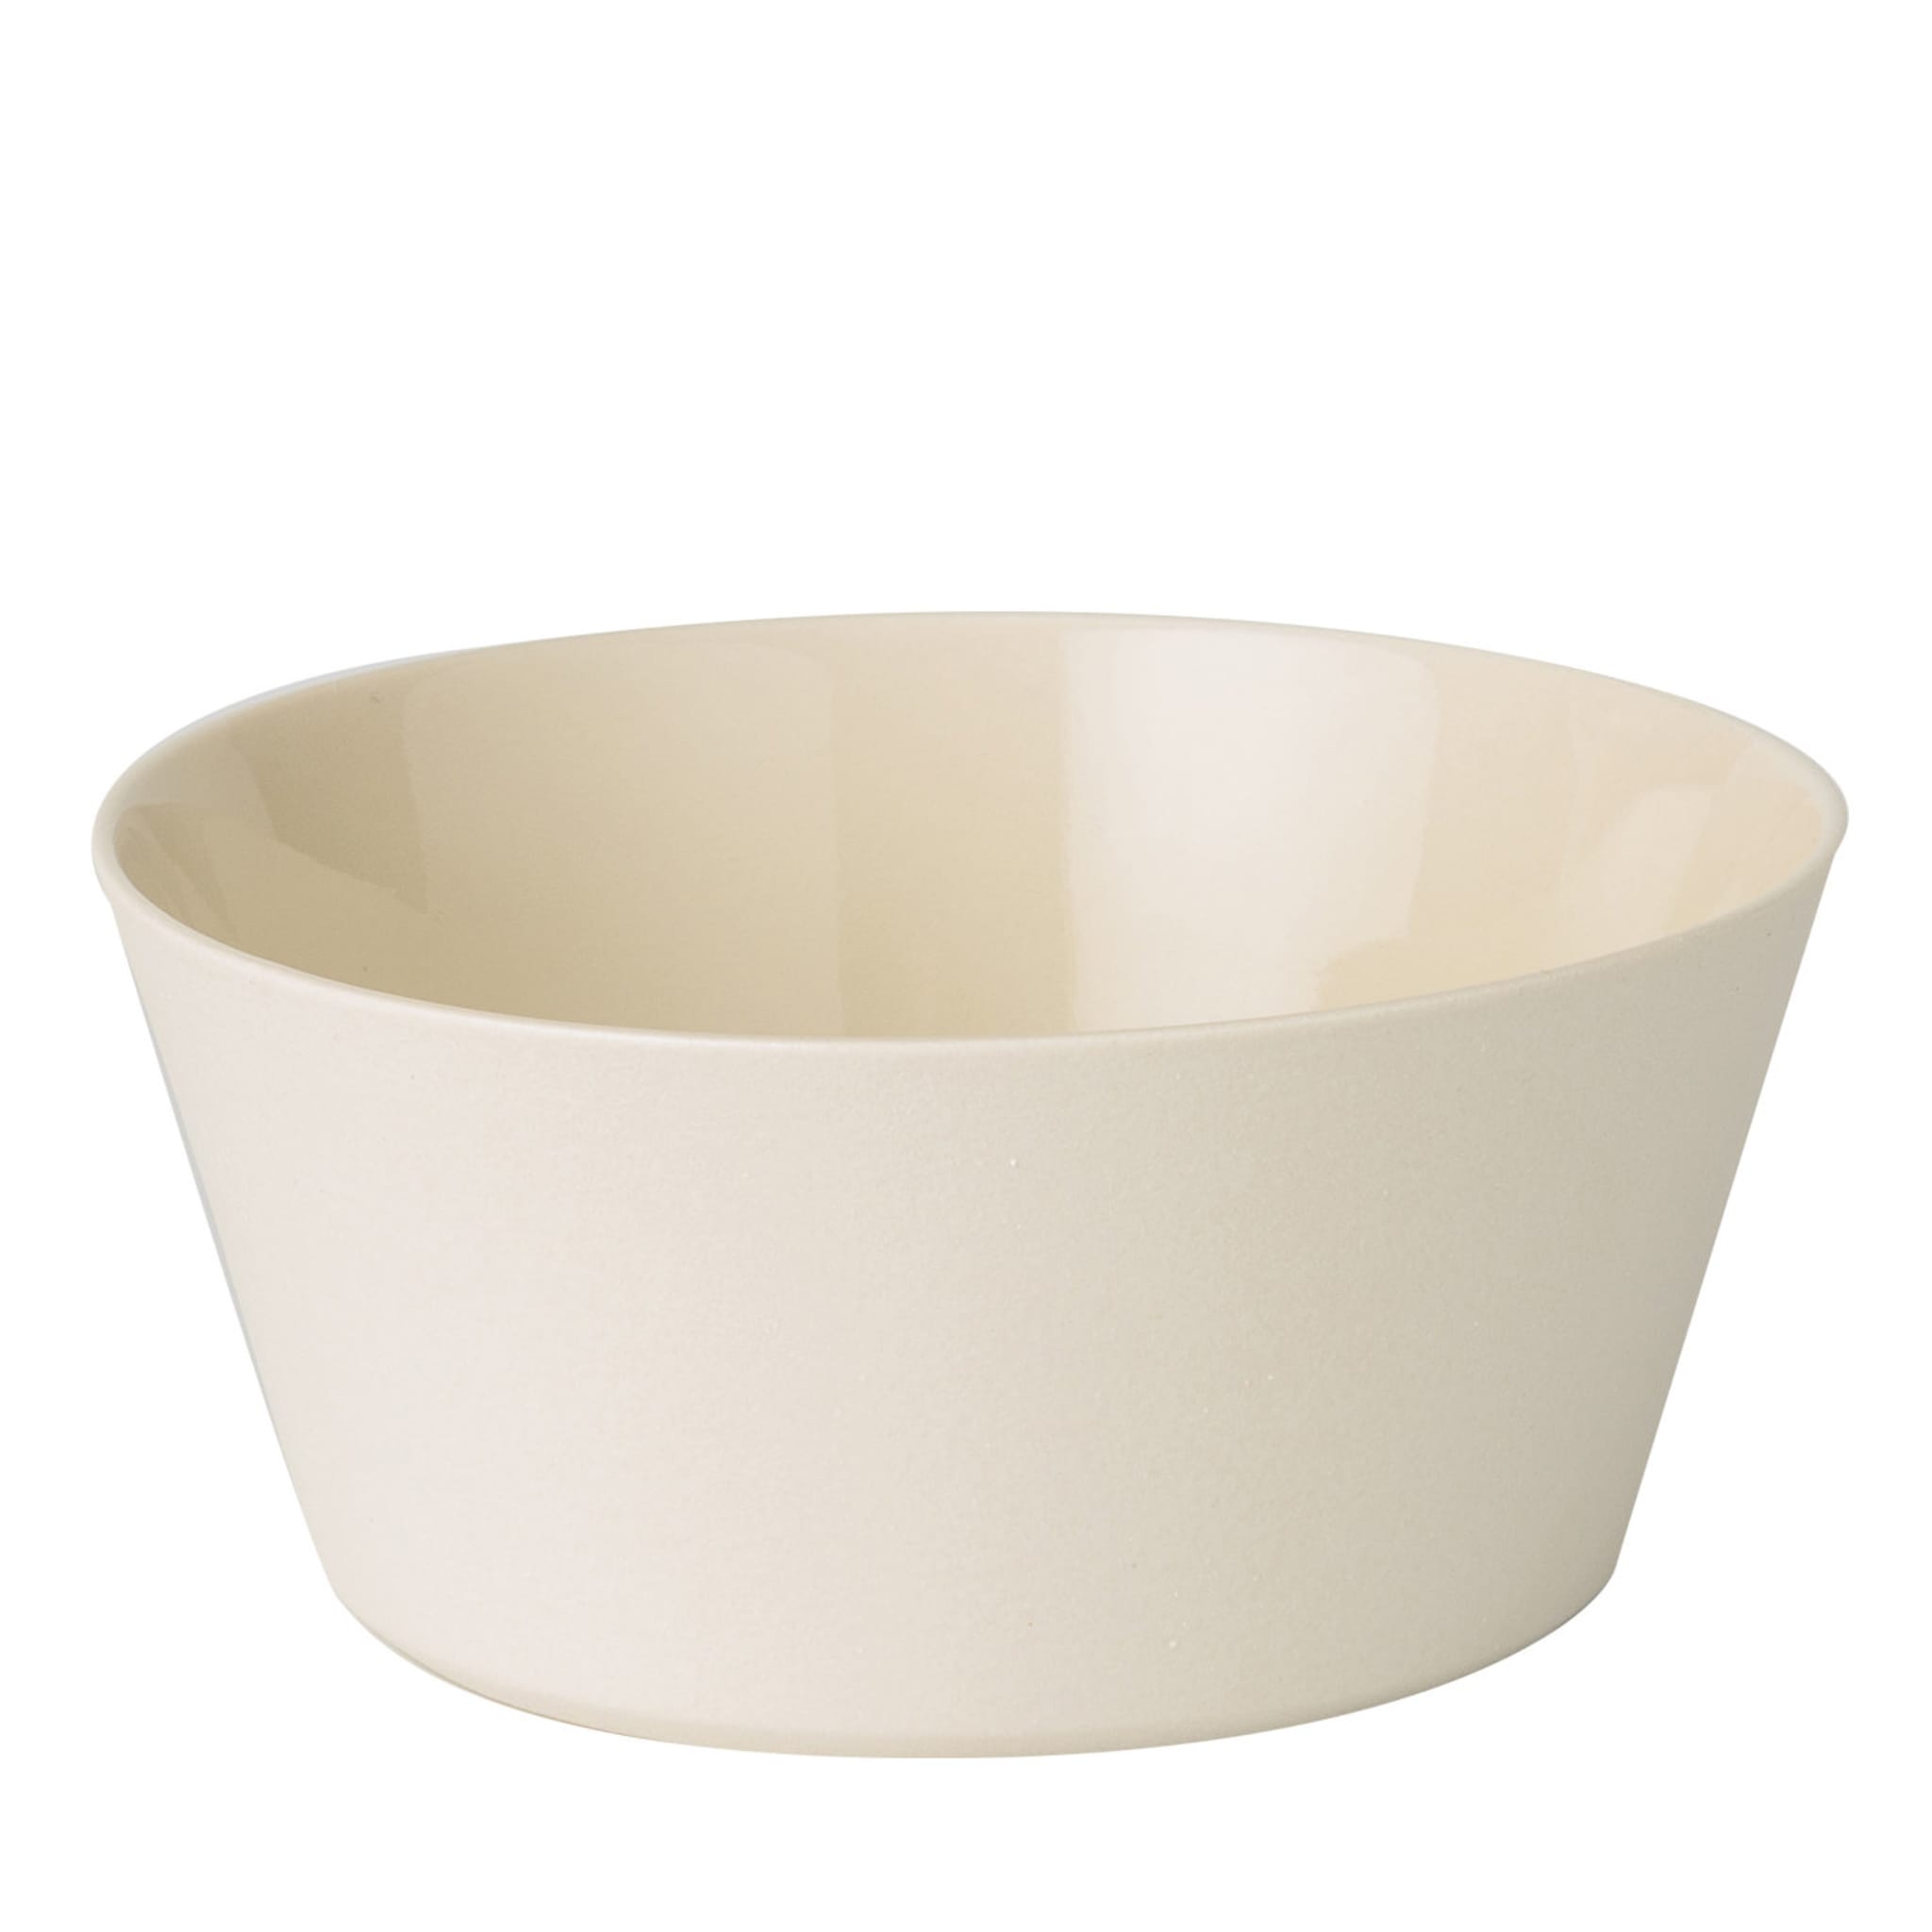 Set of 6 Large Matte White Ceramic Bowls - Main view